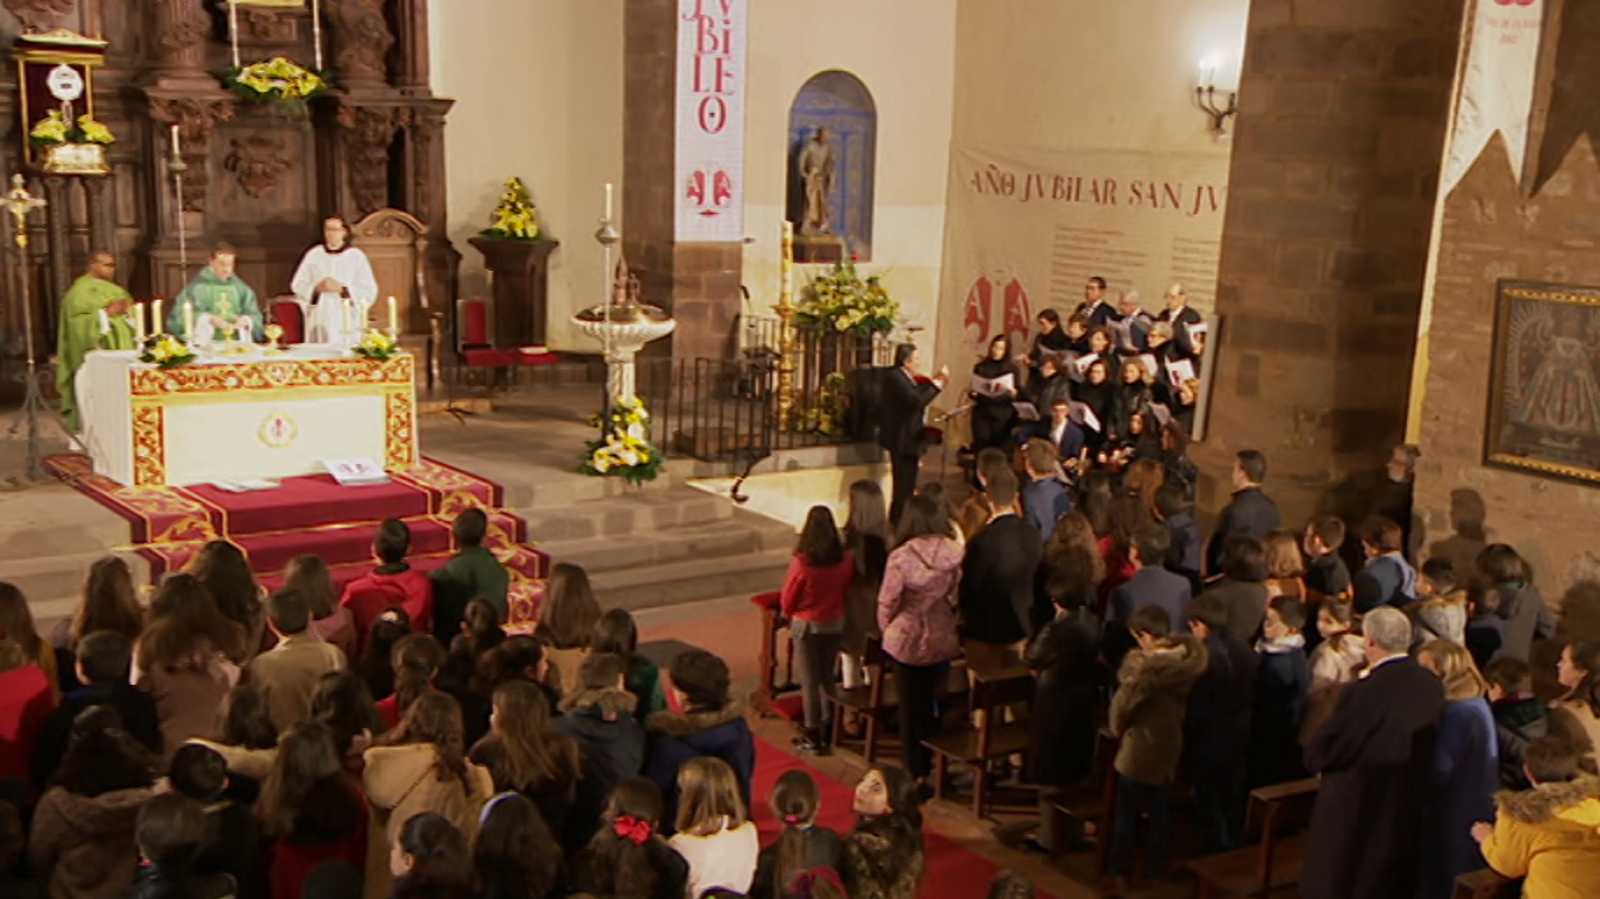 La 2 retransmitió la misa oficiada en el templo jubilar de Almodóvar del Campo el 19 de enero de 2020